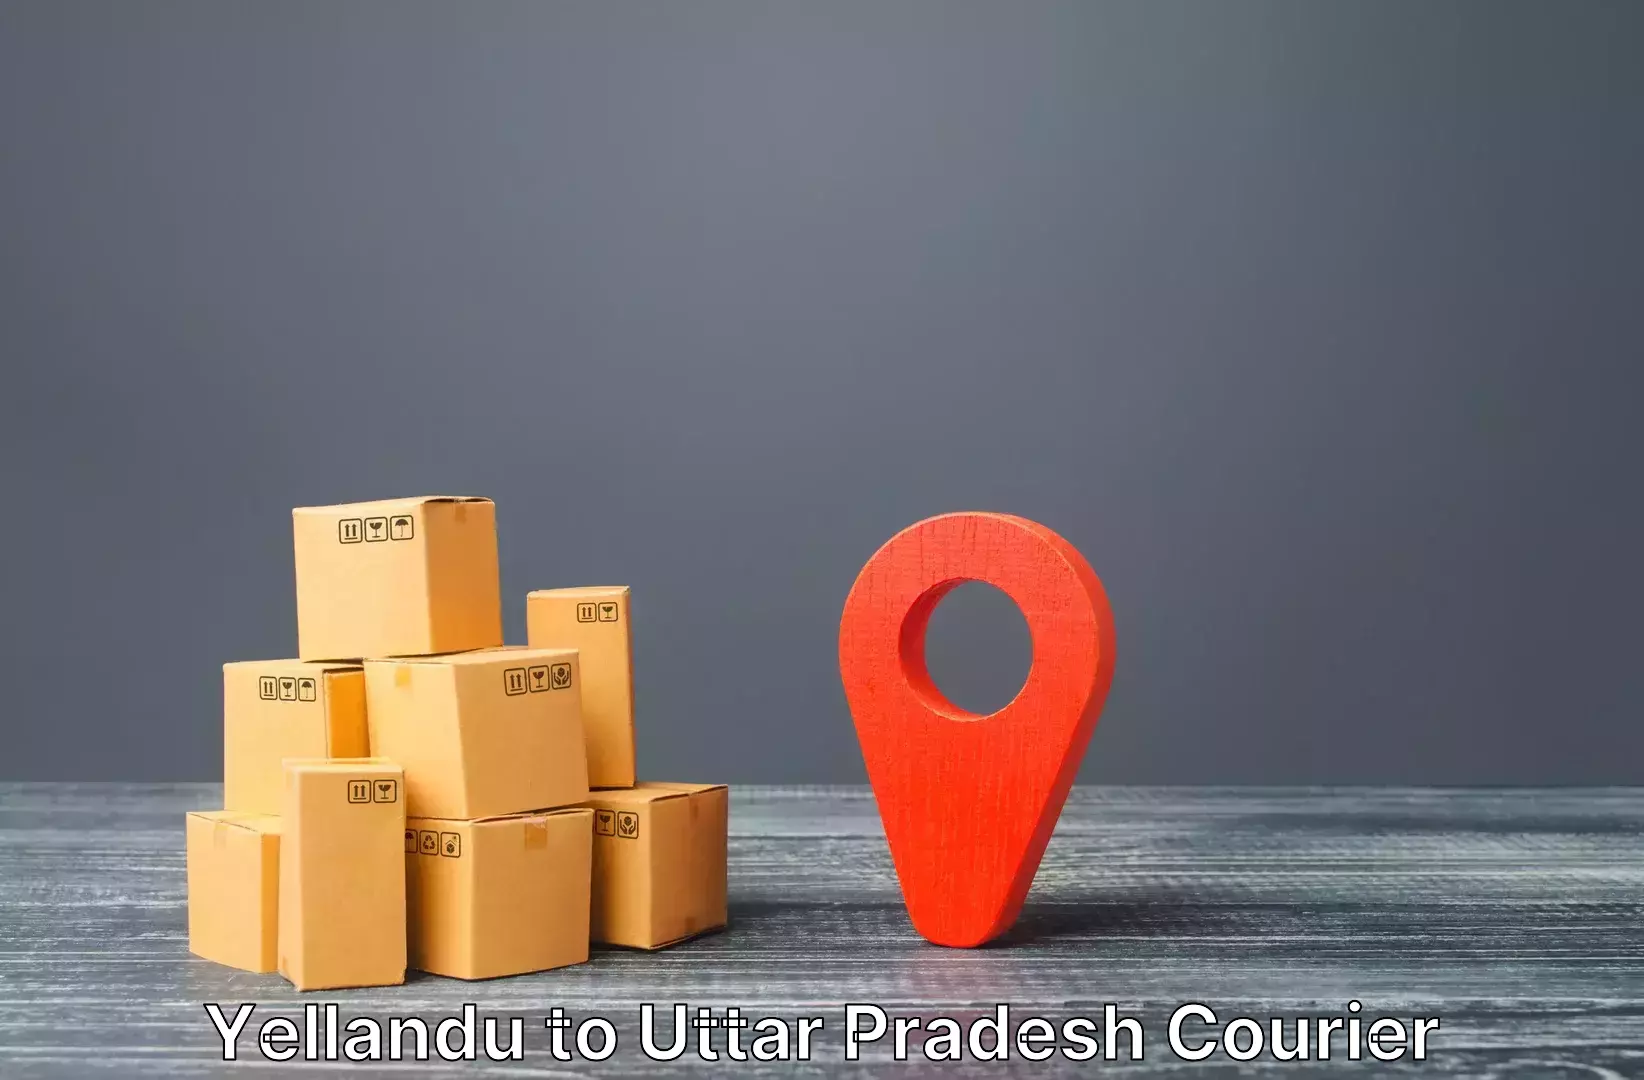 Quick luggage shipment Yellandu to Kumarganj